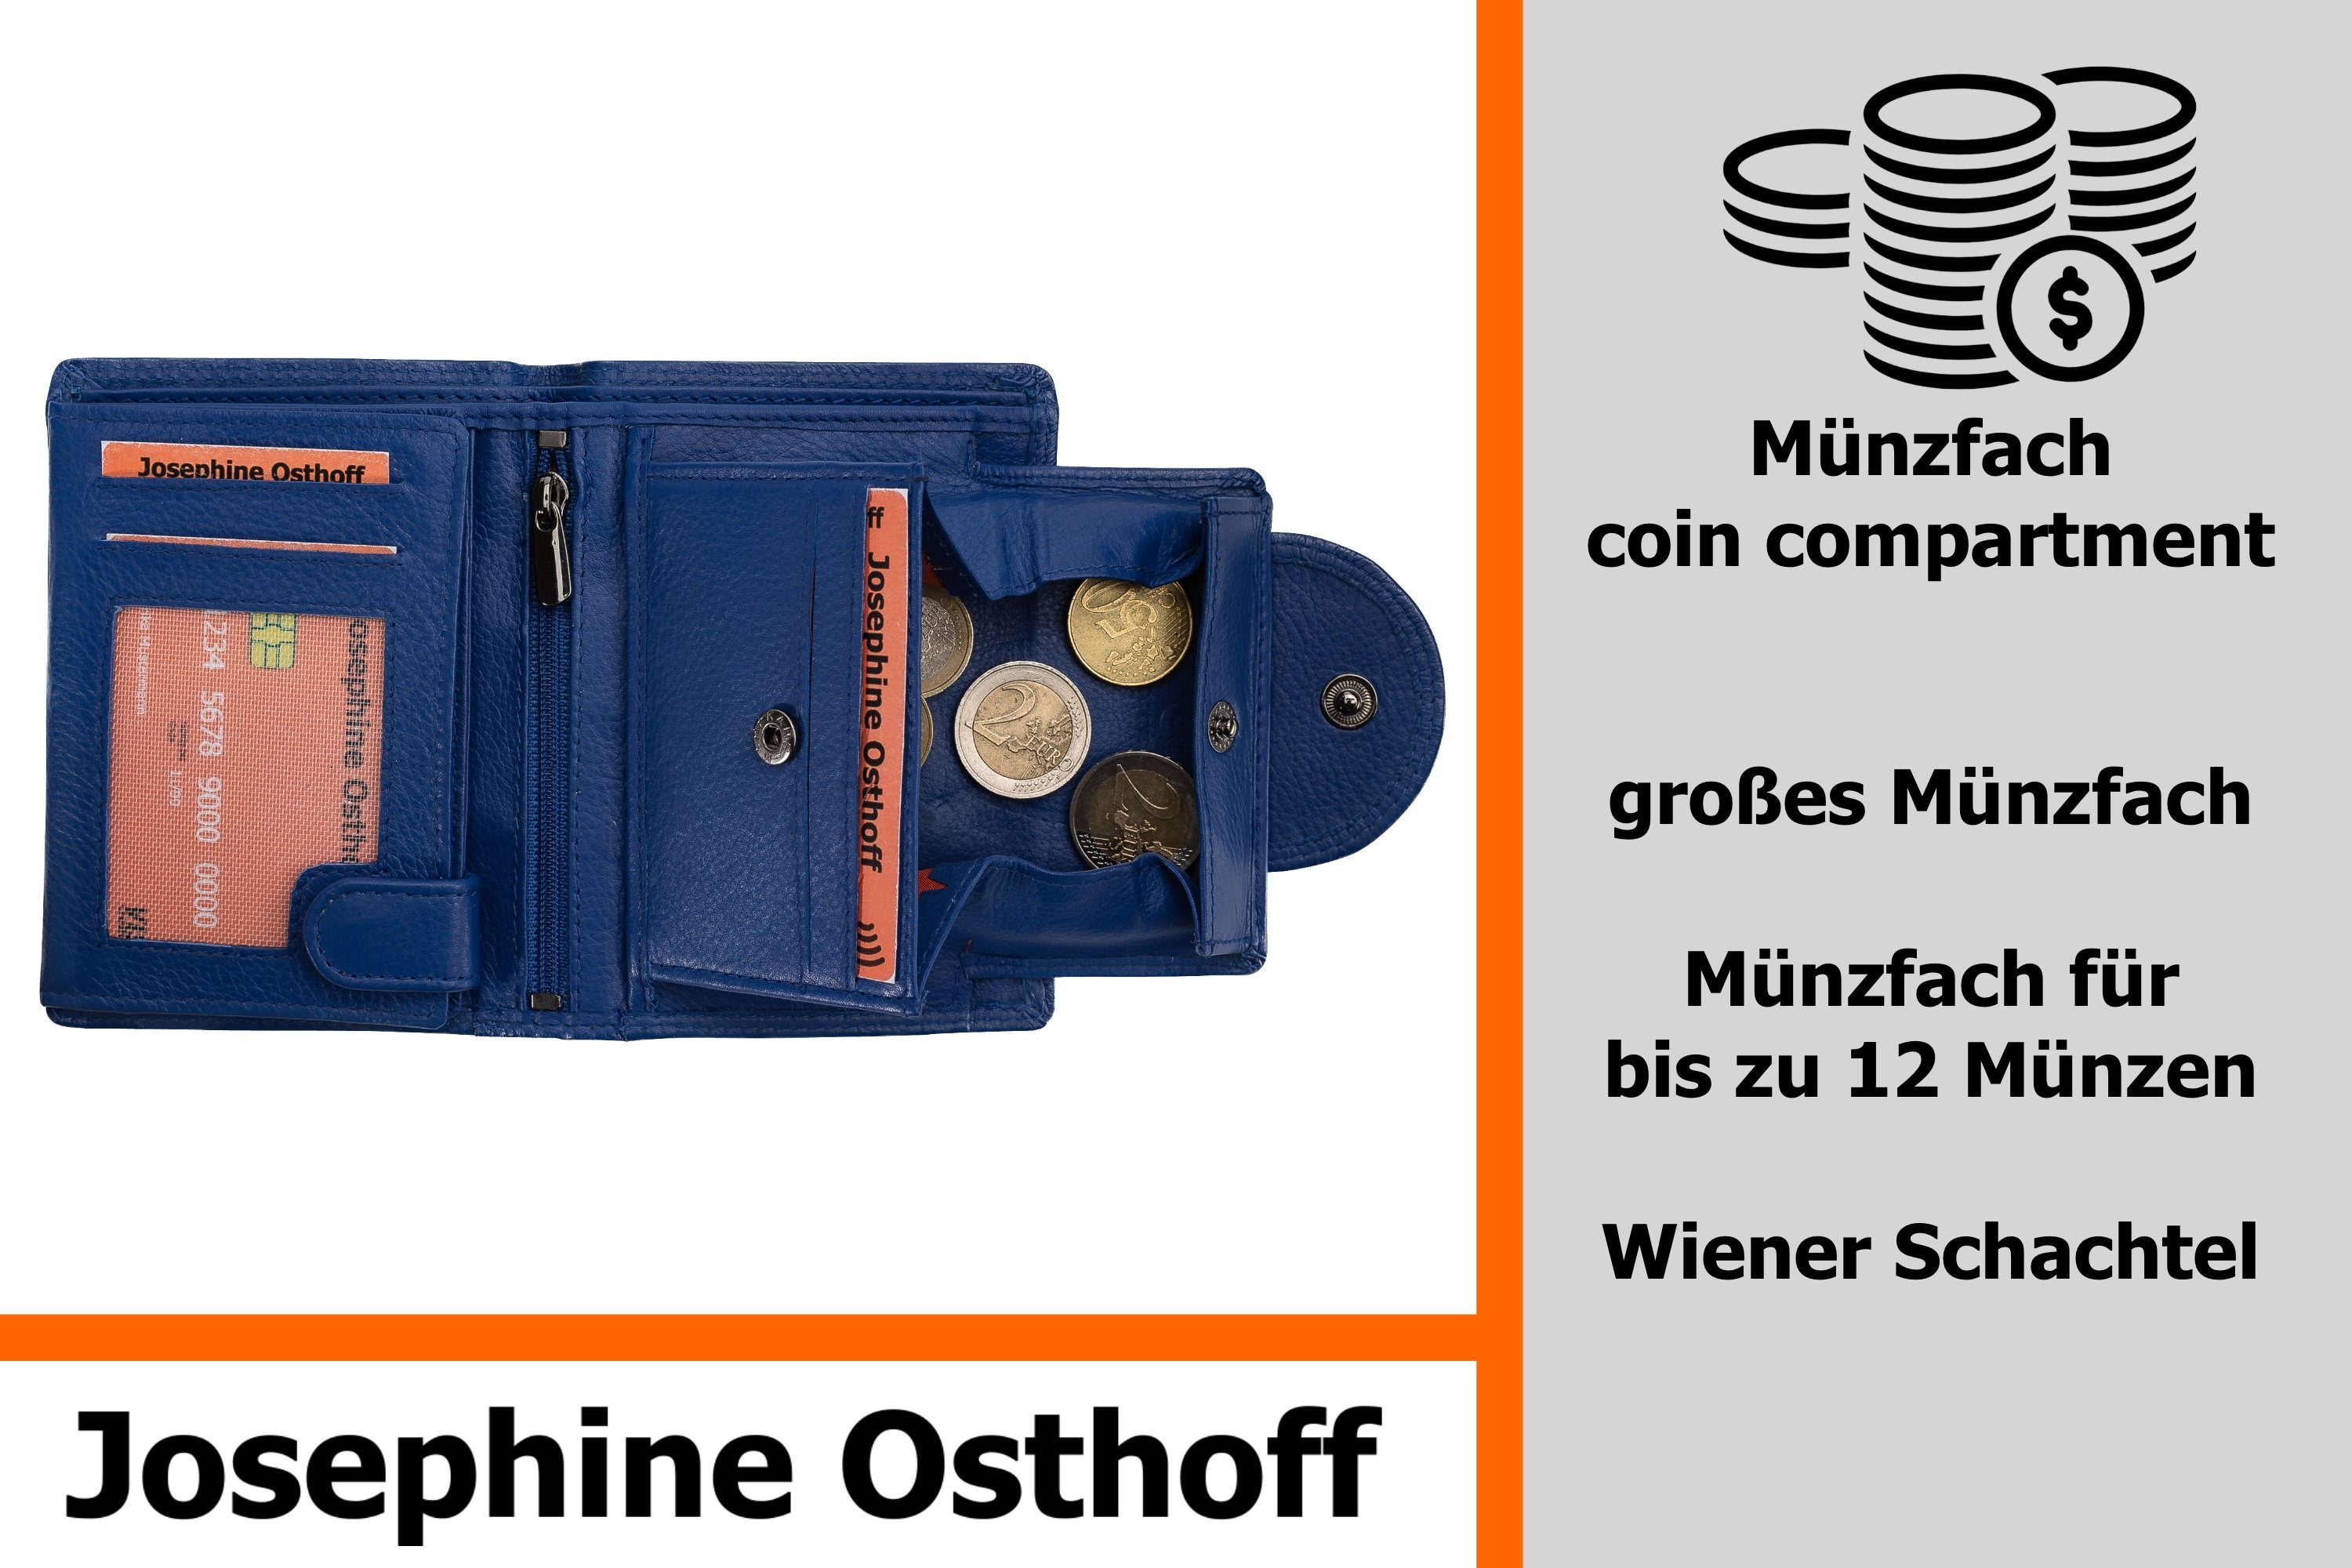 Osthoff Minibrieftasche Brieftasche royal Josephine Wiener Geldbörse